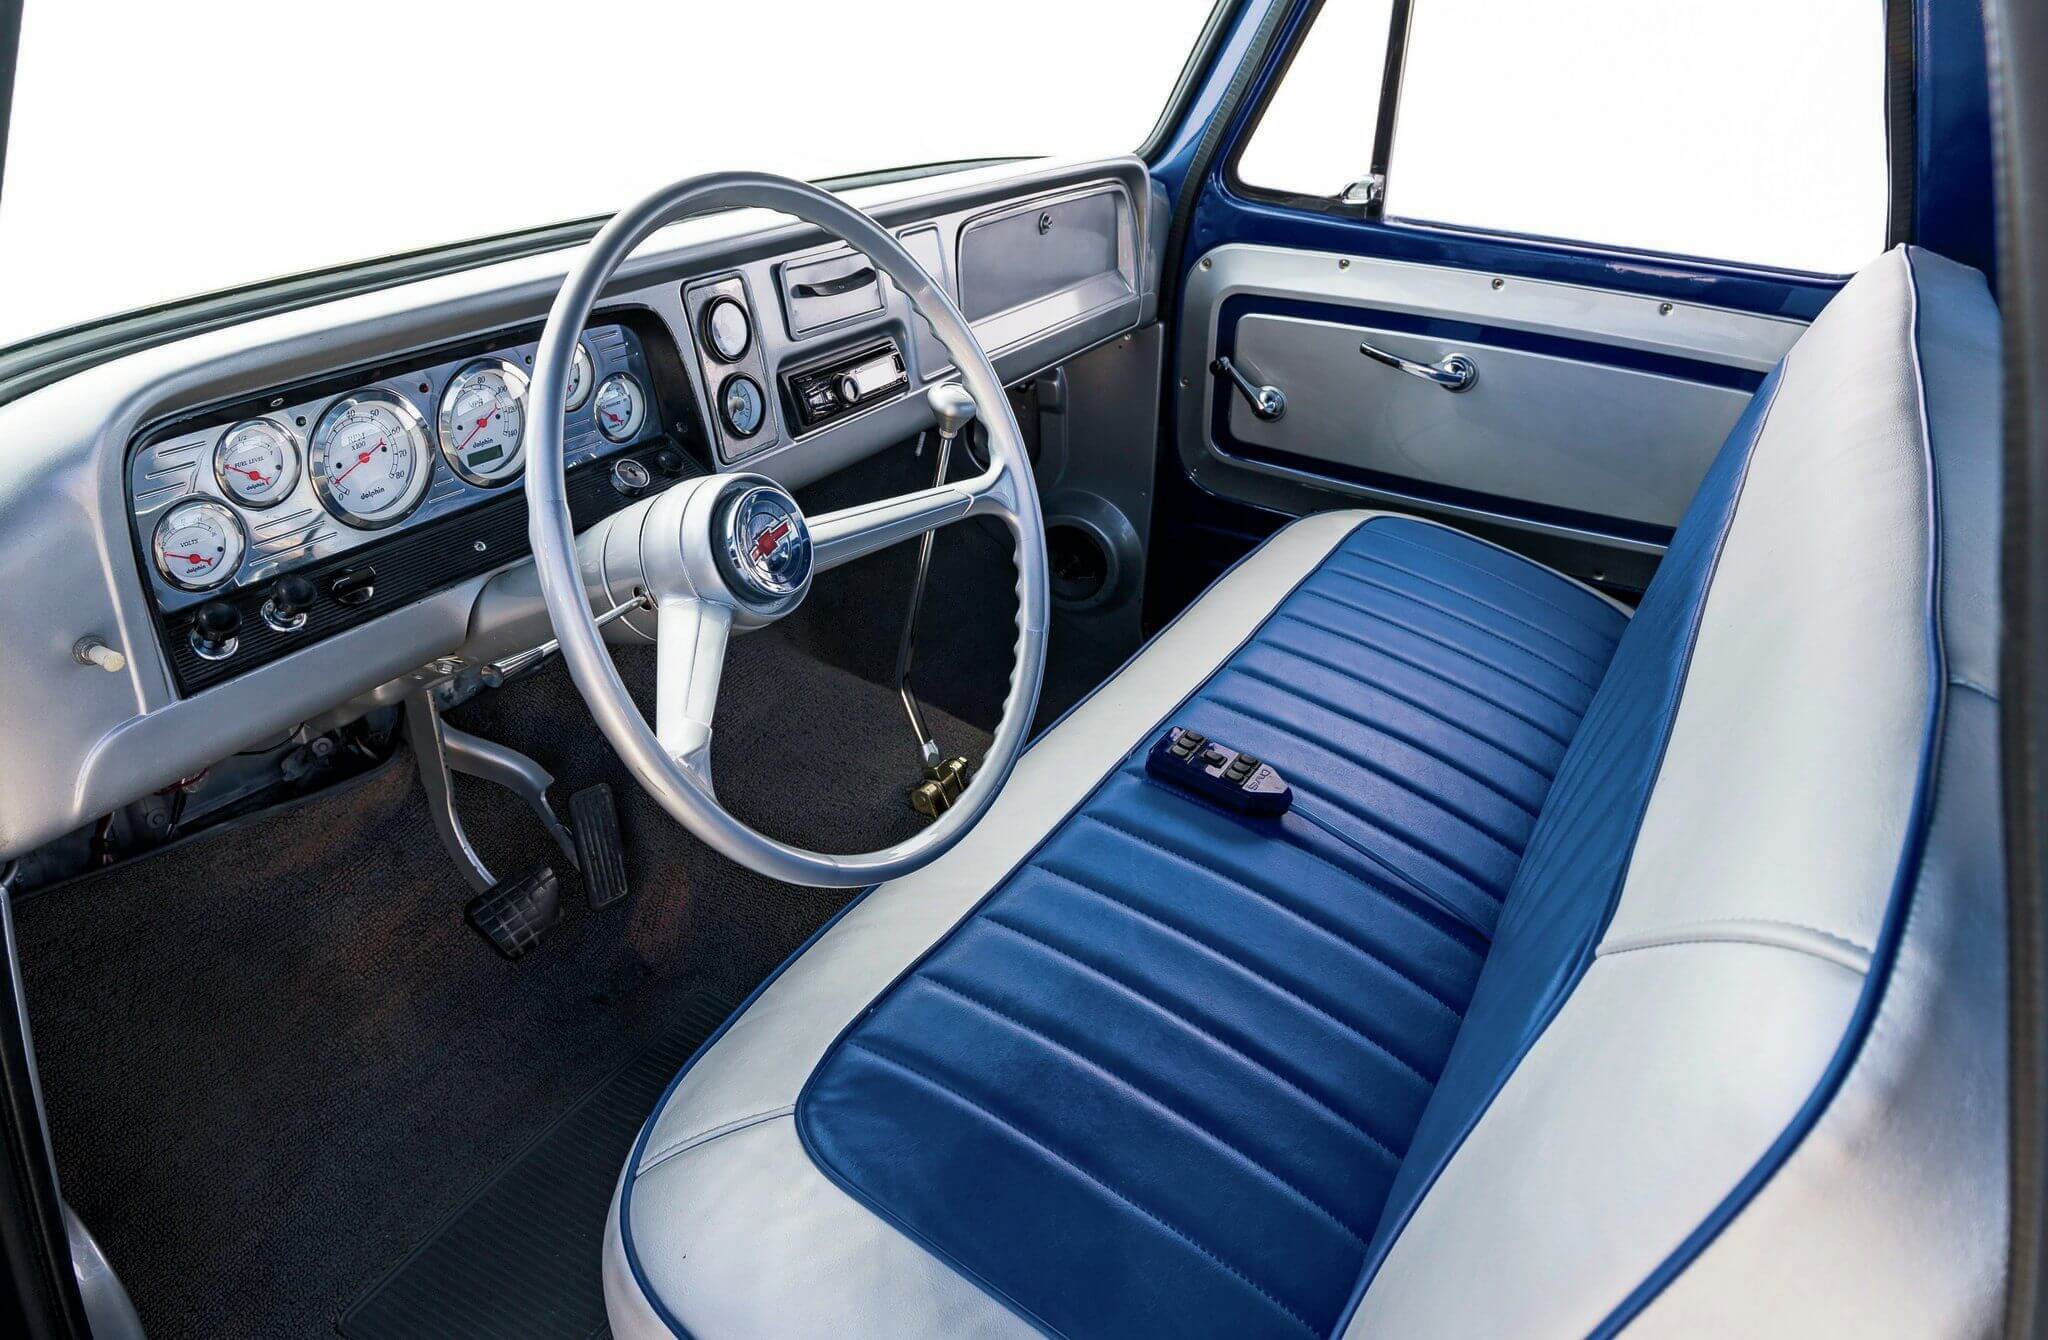 Aaron S 1964 Chevy C10 Interior - LMC Truck Life